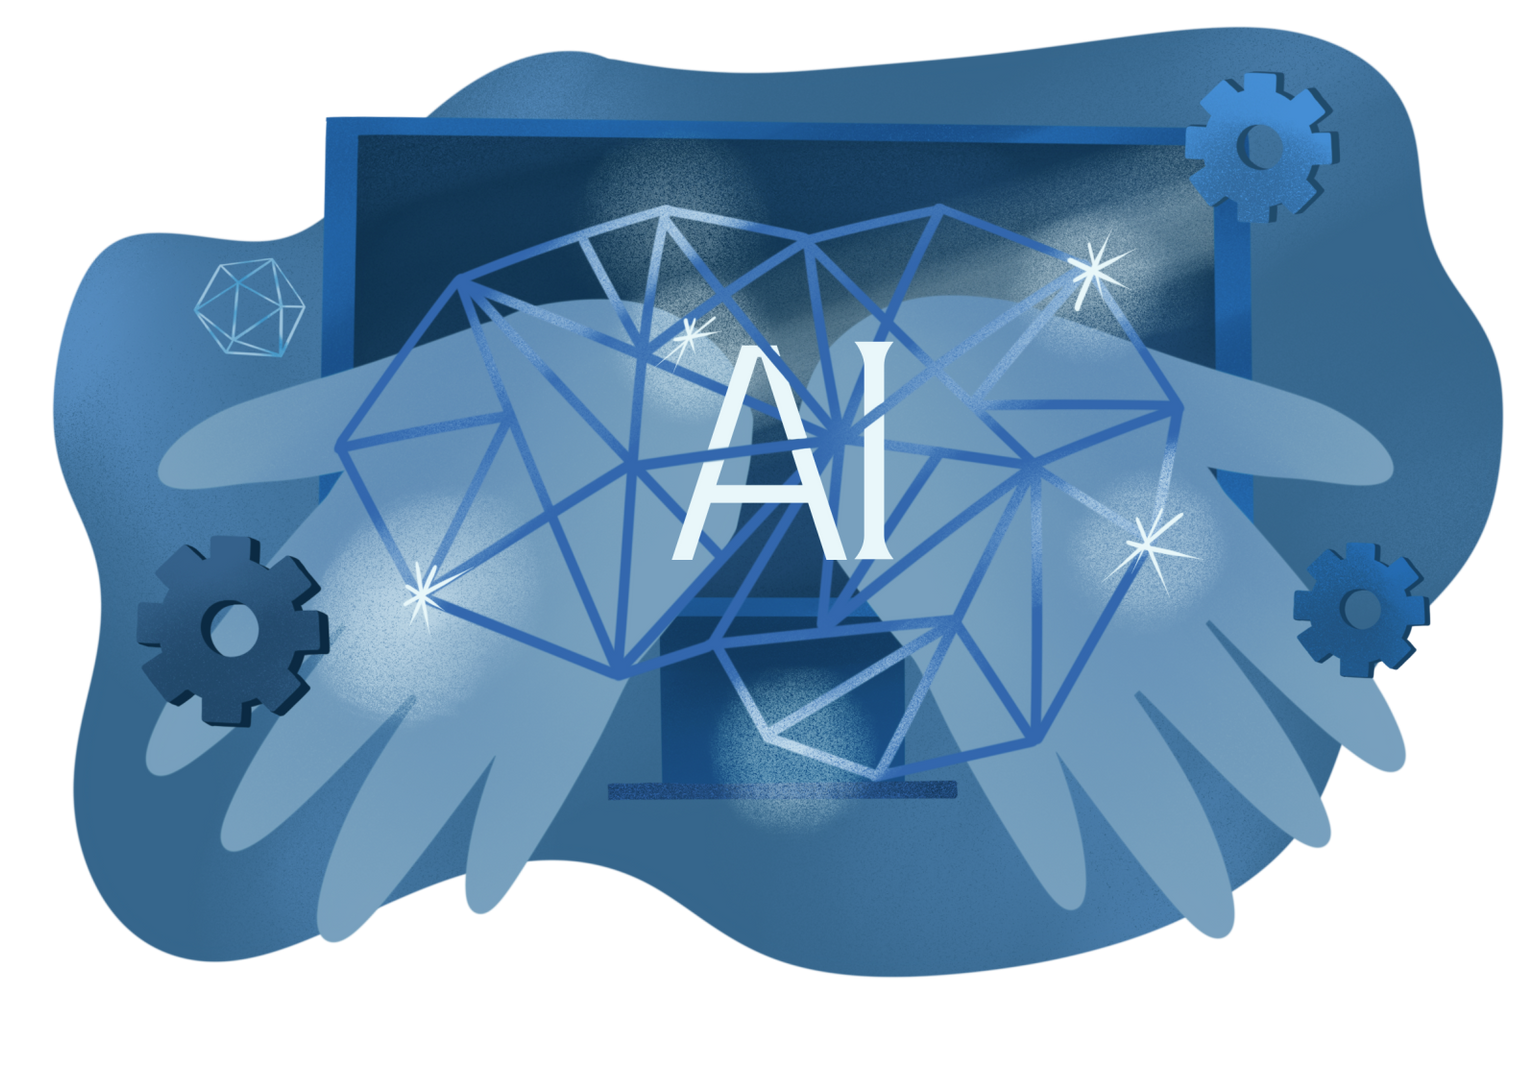 intelligenza artificiale(IA) e nuove tecnologie nel processo di trasformazione digitale